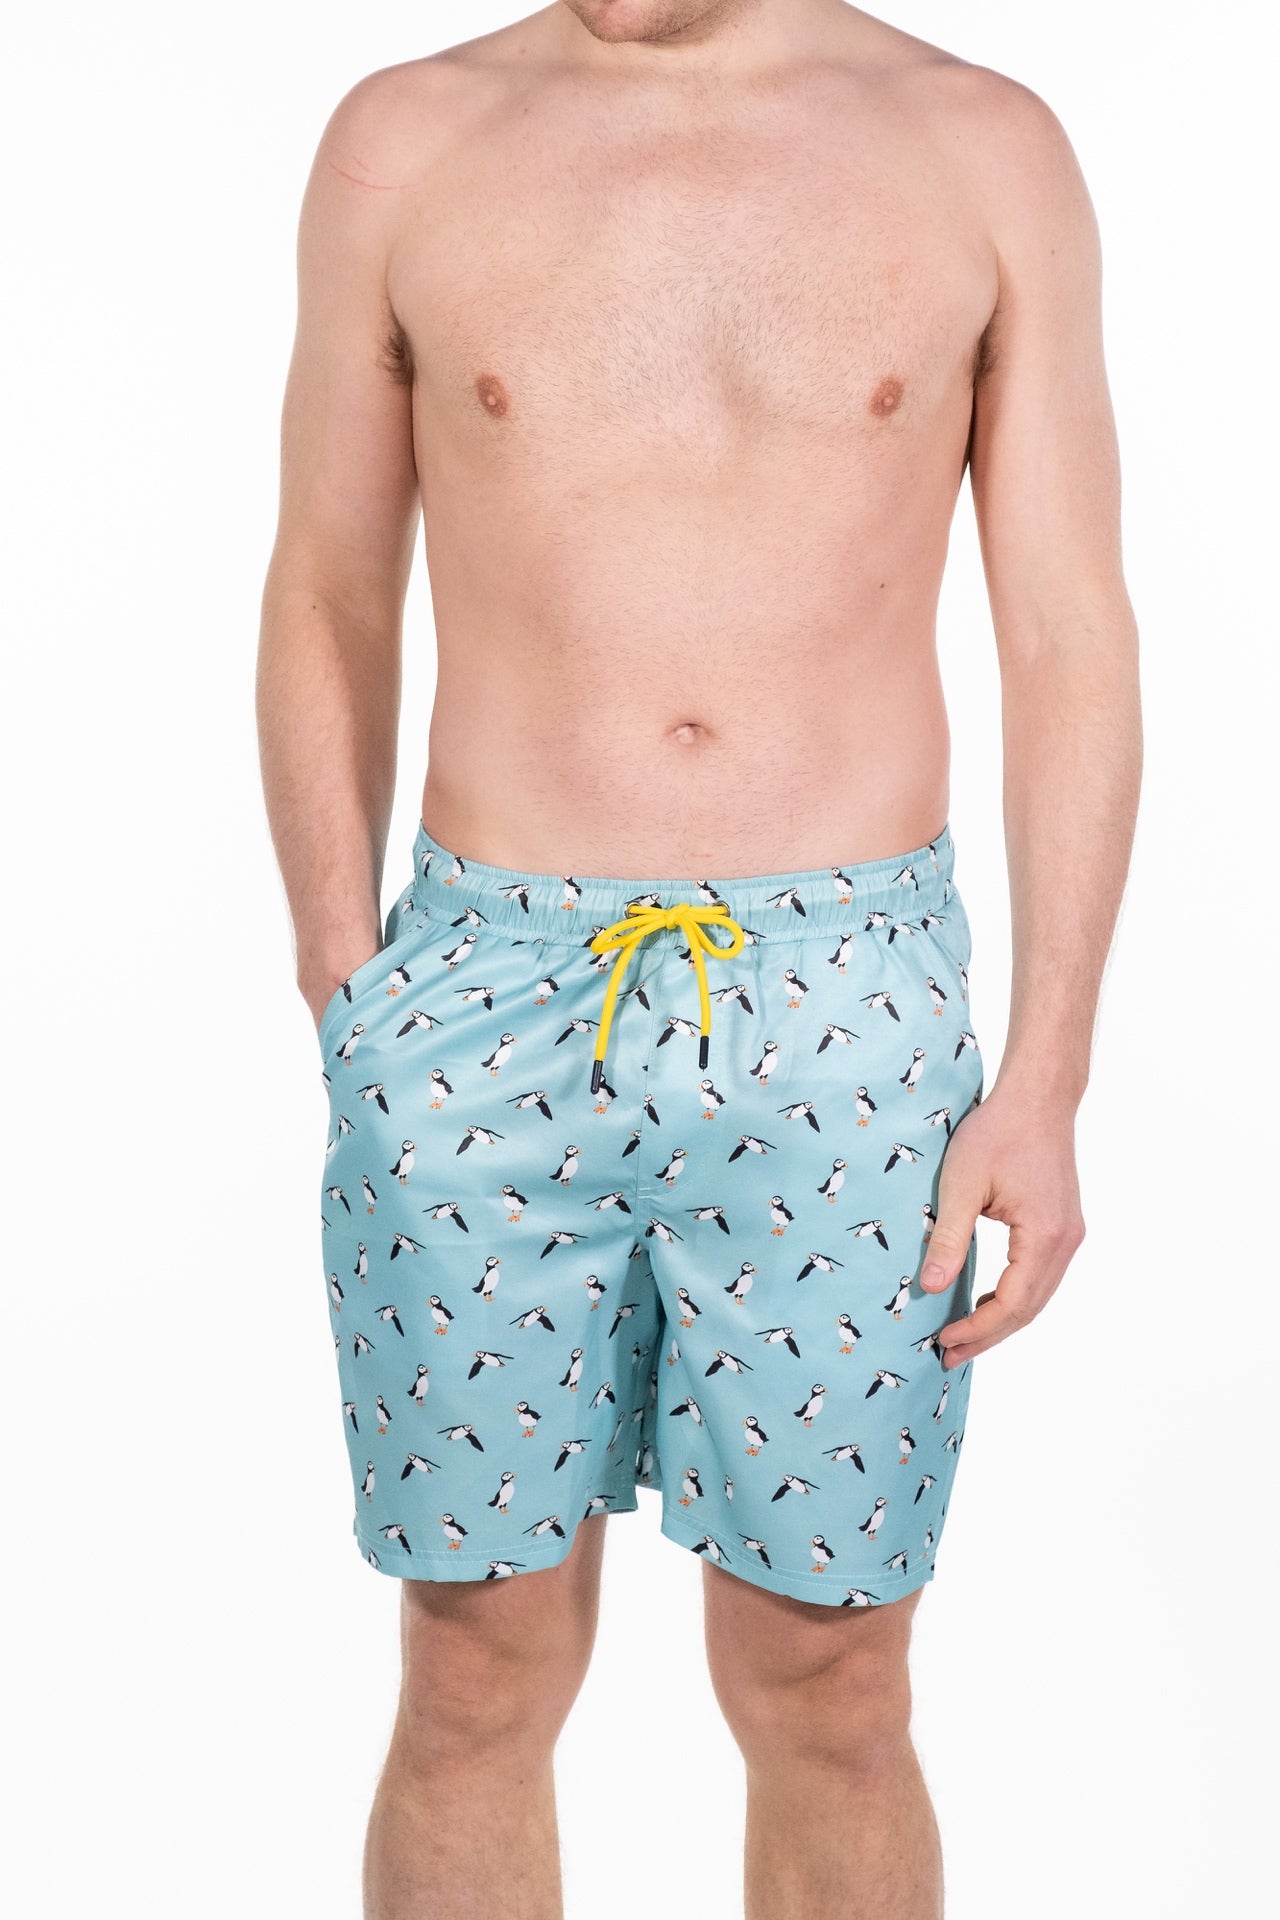 Arlo Puffin Print Swim Shorts - Rupert and Buckley - Swin Shorts